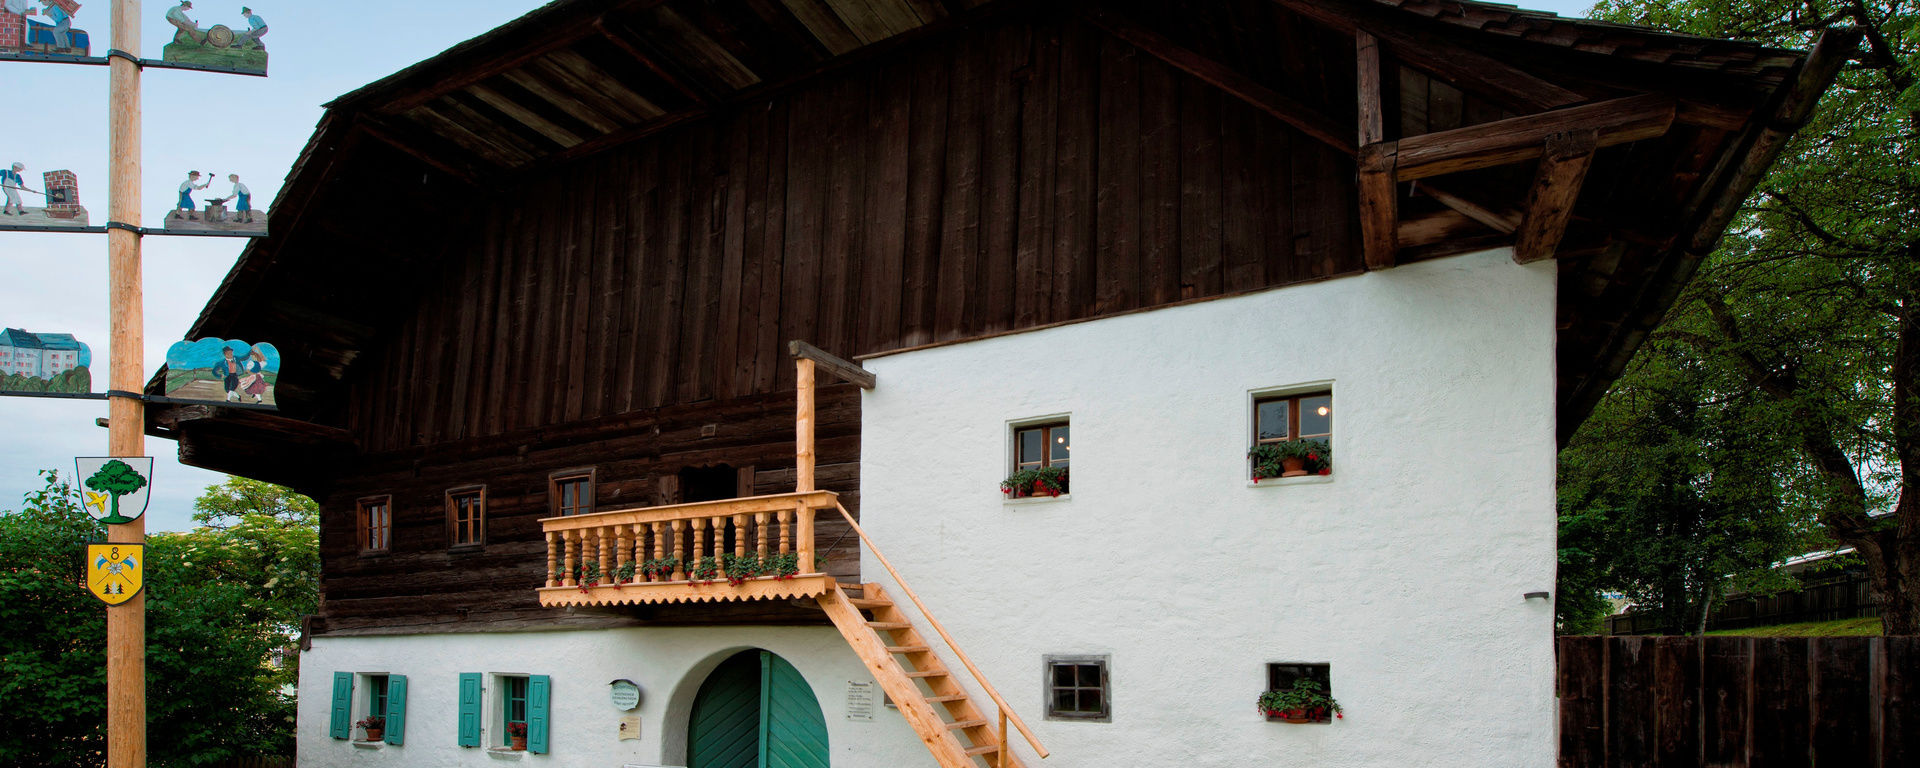 Heimatmuseum Bauernhaus altes Haus mit Holztreppe und einem kleinen Maibaum davo